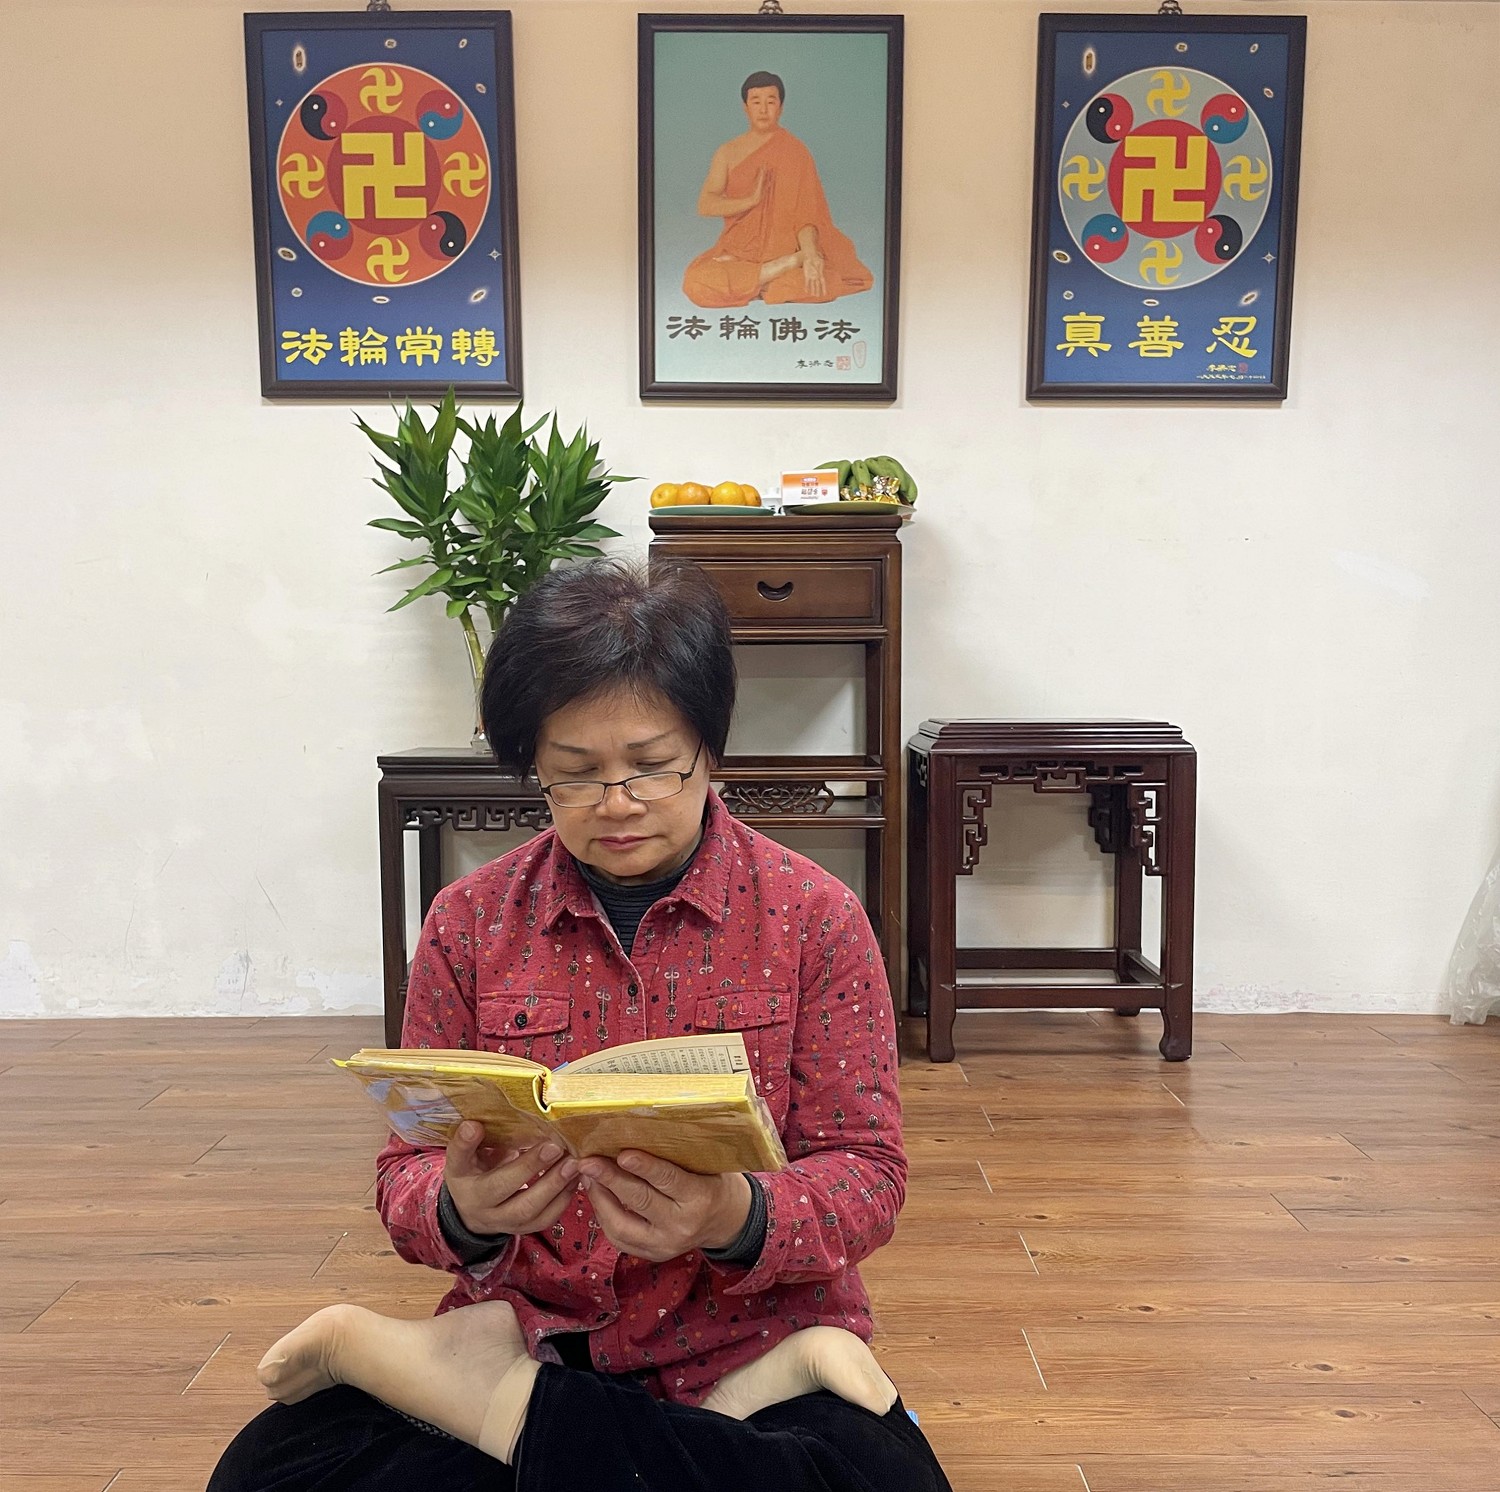 Image for article Designer premiada: Transformação total após a prática do Falun Dafa